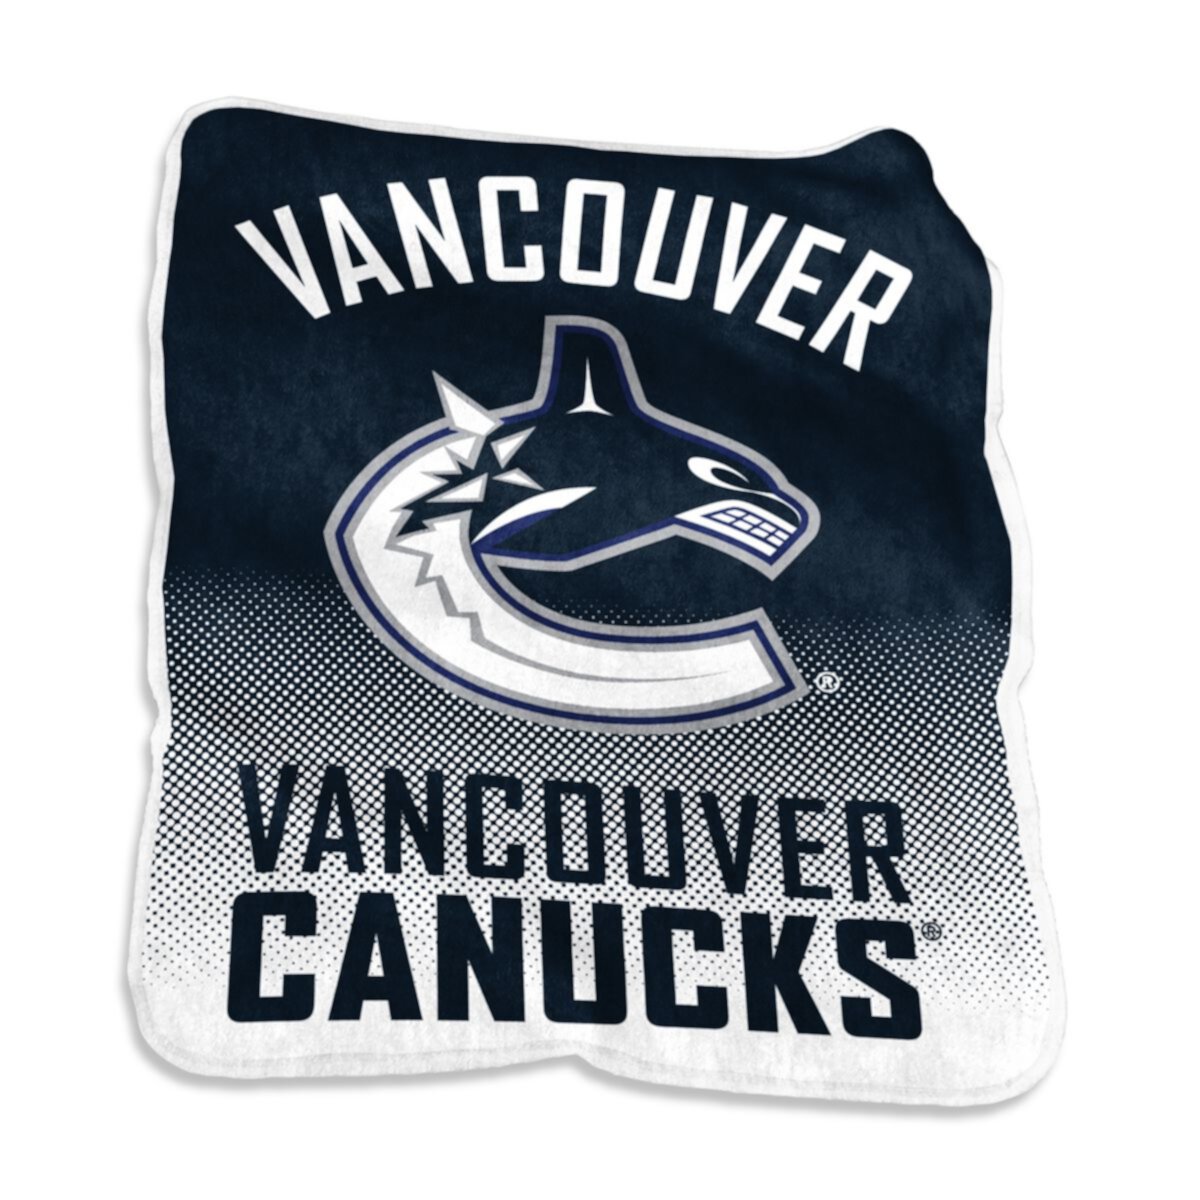 Логотип брендов Vancouver Canucks Raschel Throw Blanket NHL